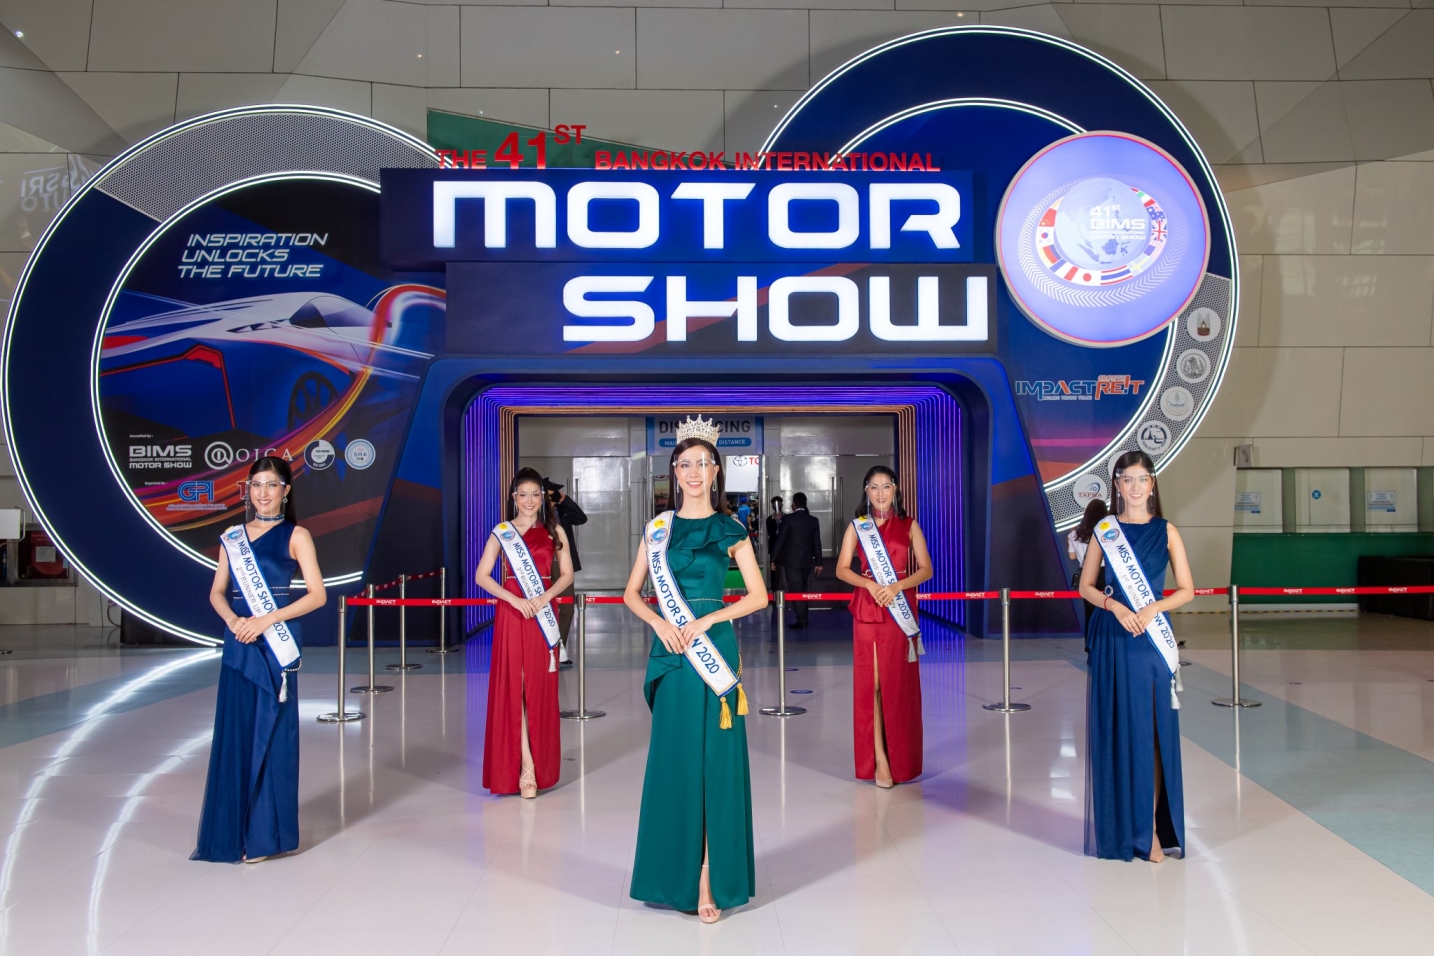 มอเตอร์โชว์ 2020 : ส่องความงาม “Miss Motor Show 2020” น่ารักทุกกระเบียดนิ้ว (ภาพ)